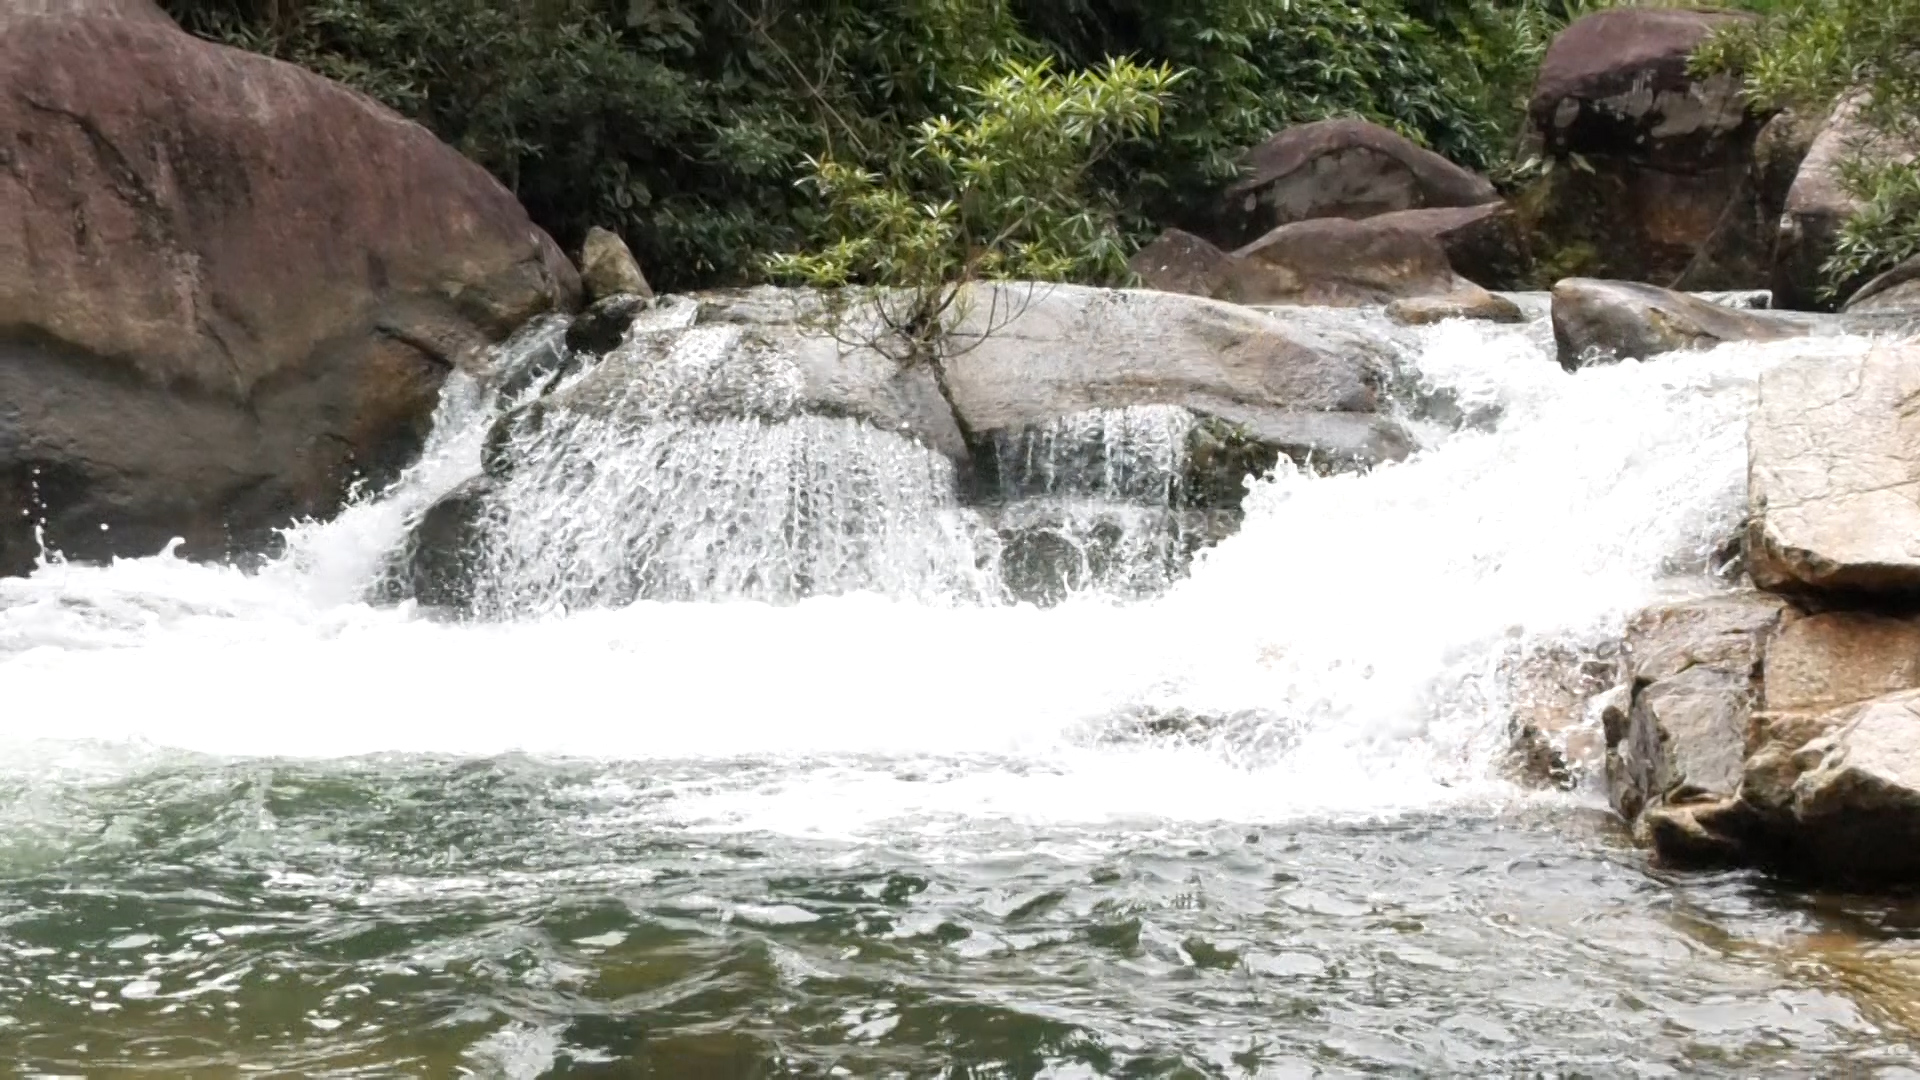 Đây là thác nước đẹp như phim ở Thanh Hóa, có lan rừng thơm, dưới suối vô số cá, tôm lạ mắt- Ảnh 4.